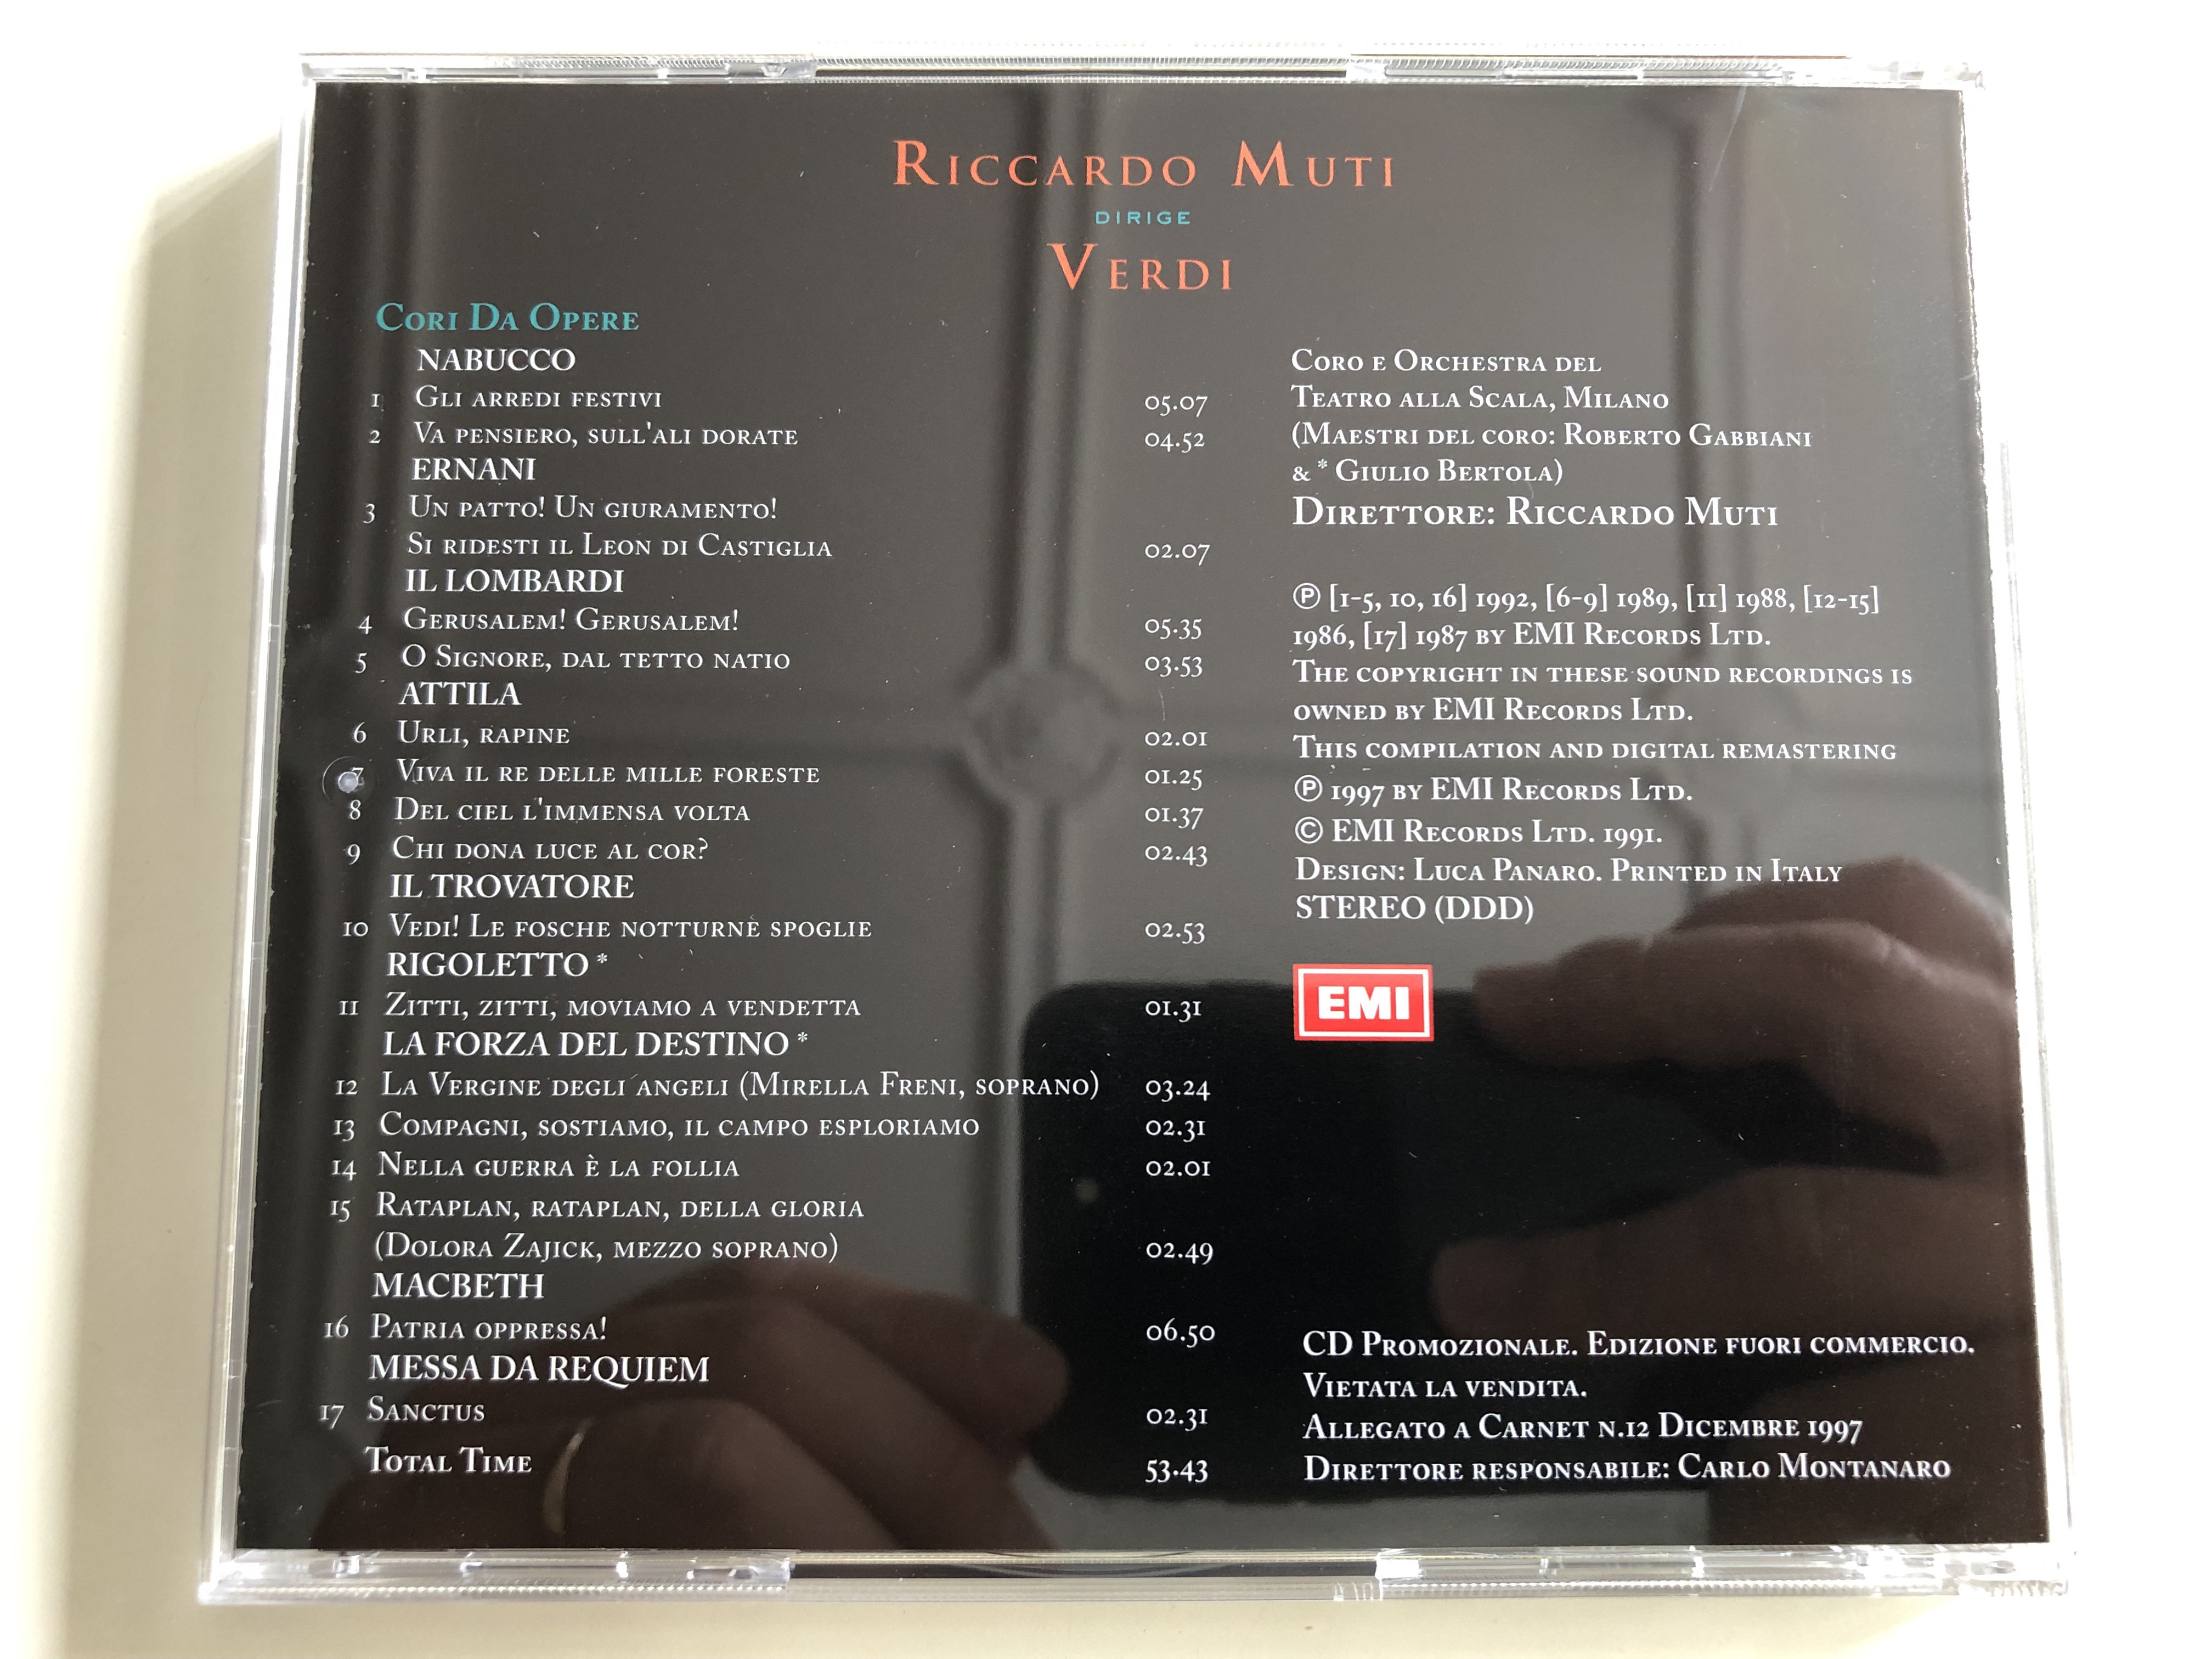 riccardo-muti-dirige-verdi-coro-e-orchestra-del-teatro-alla-scala-milano-emi-records-ltd.-audio-cd-7243-4-71748-2-7-6-.jpg